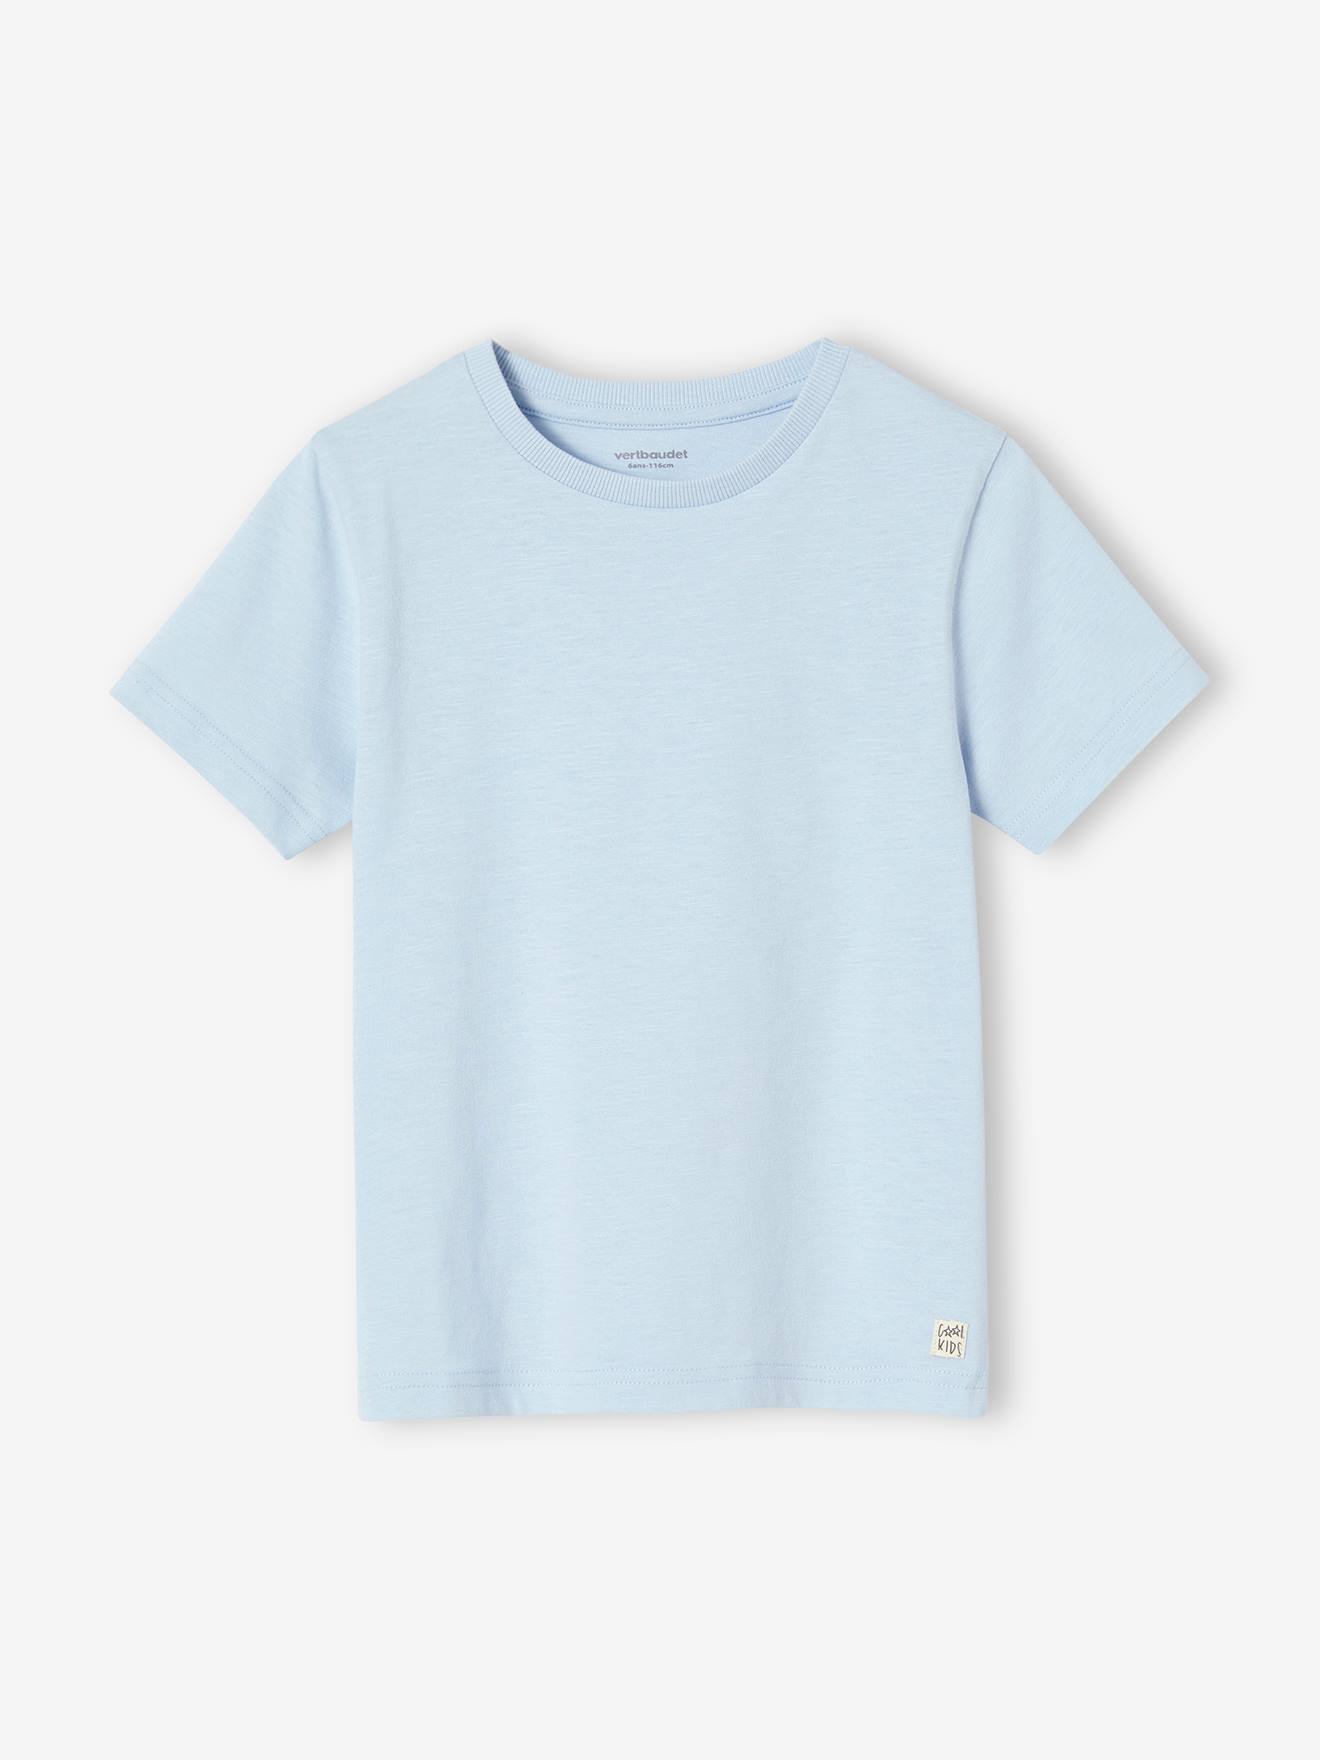 Personaliseerbare gekleurd jongensshirt met korte mouwen hemelsblauw